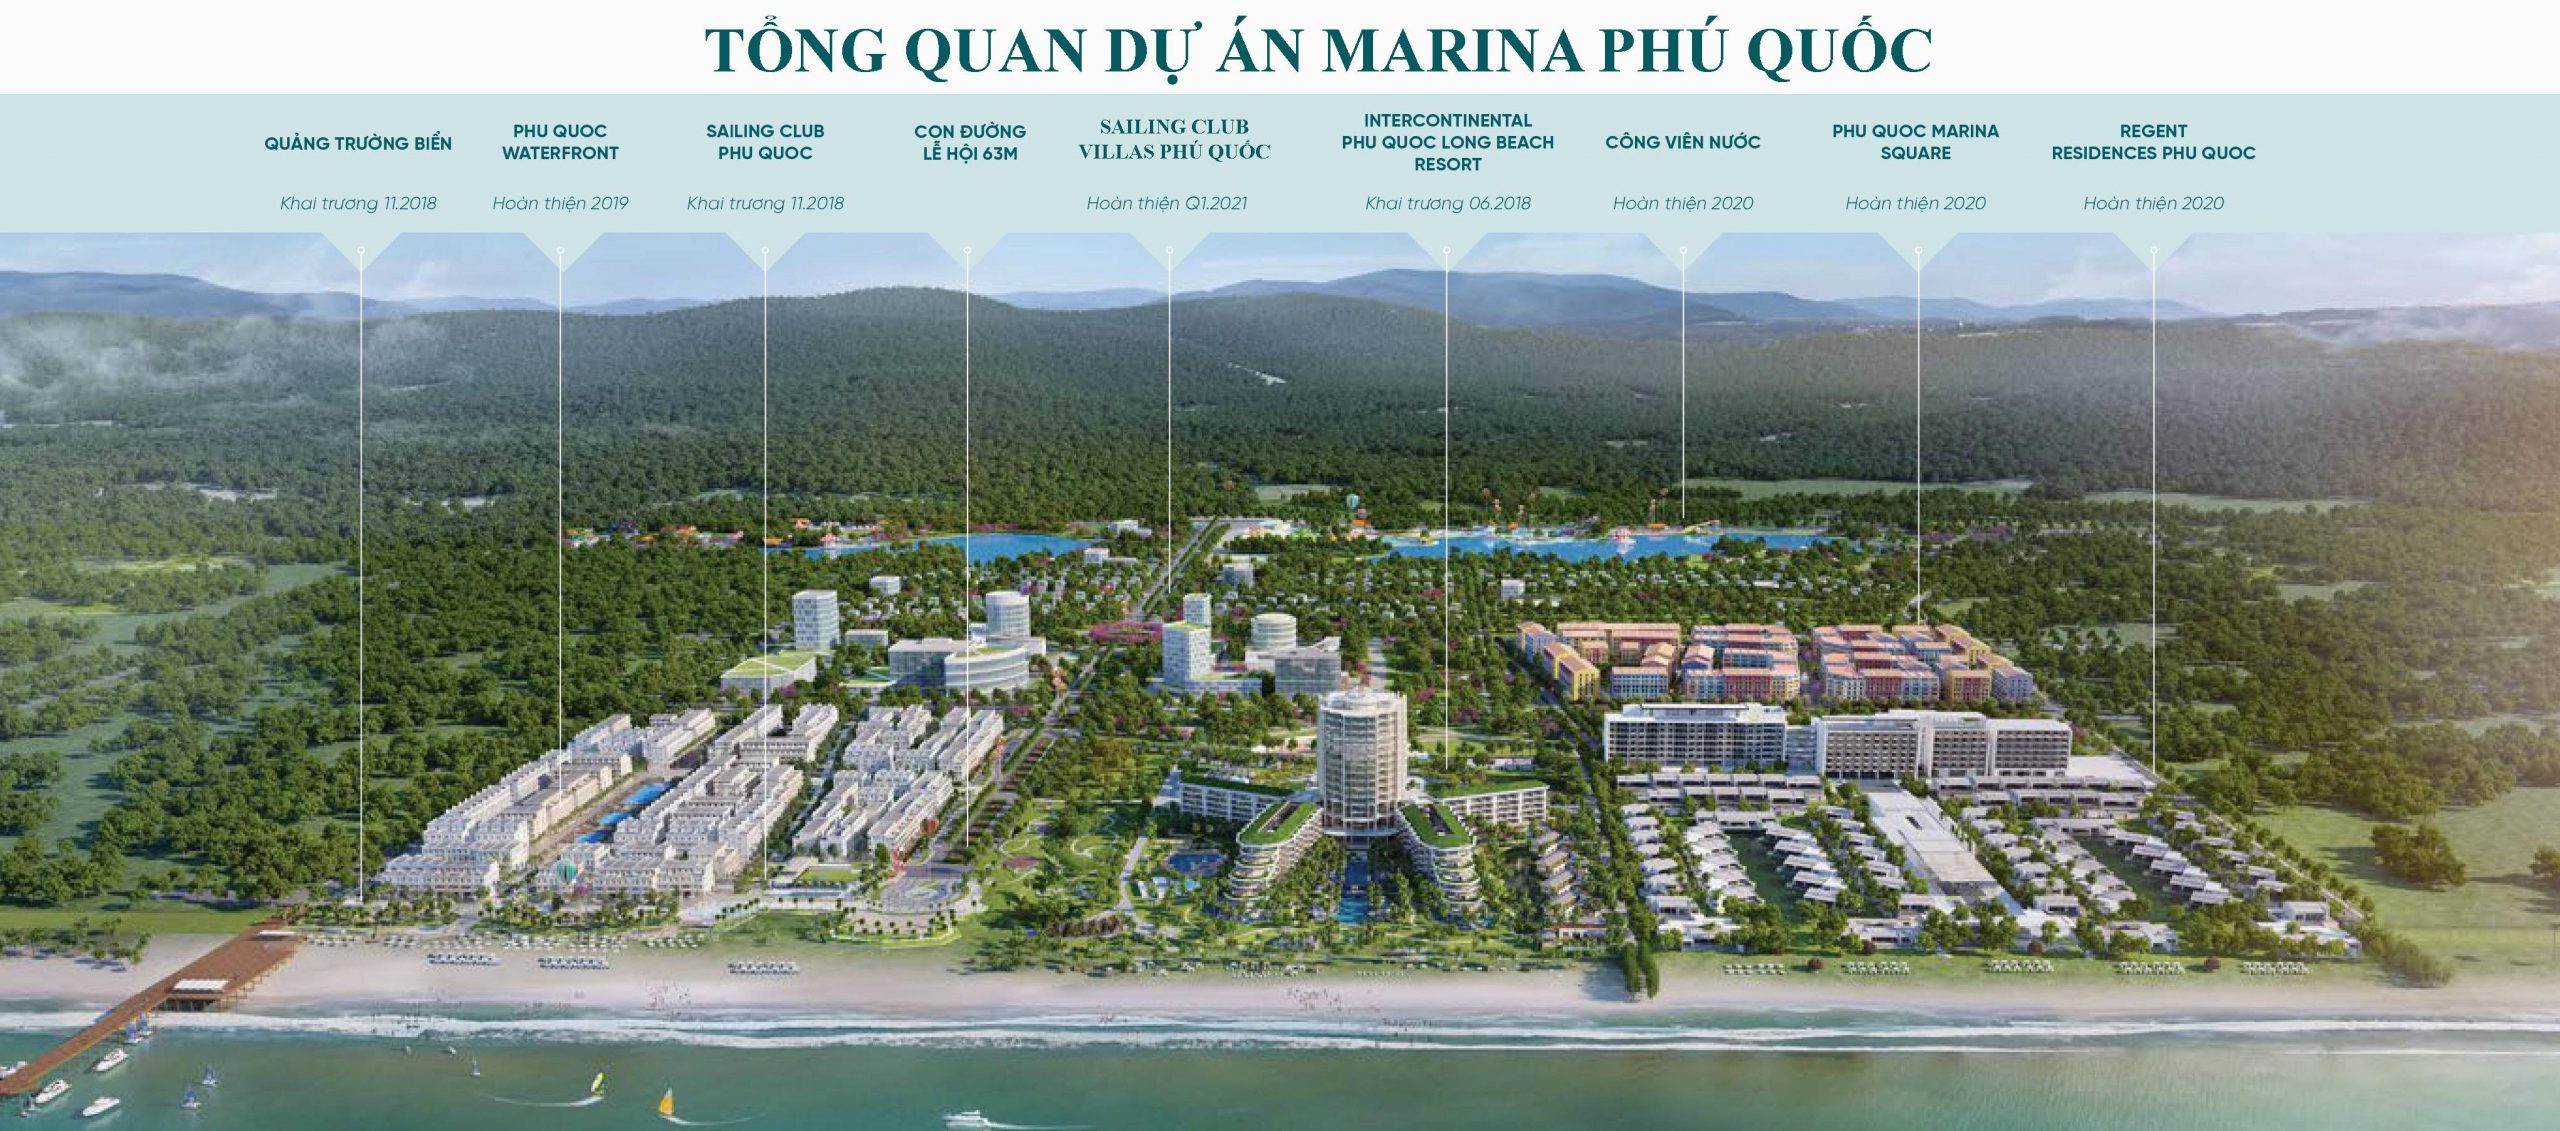 Tổng quan dự án Phú Quốc Marina